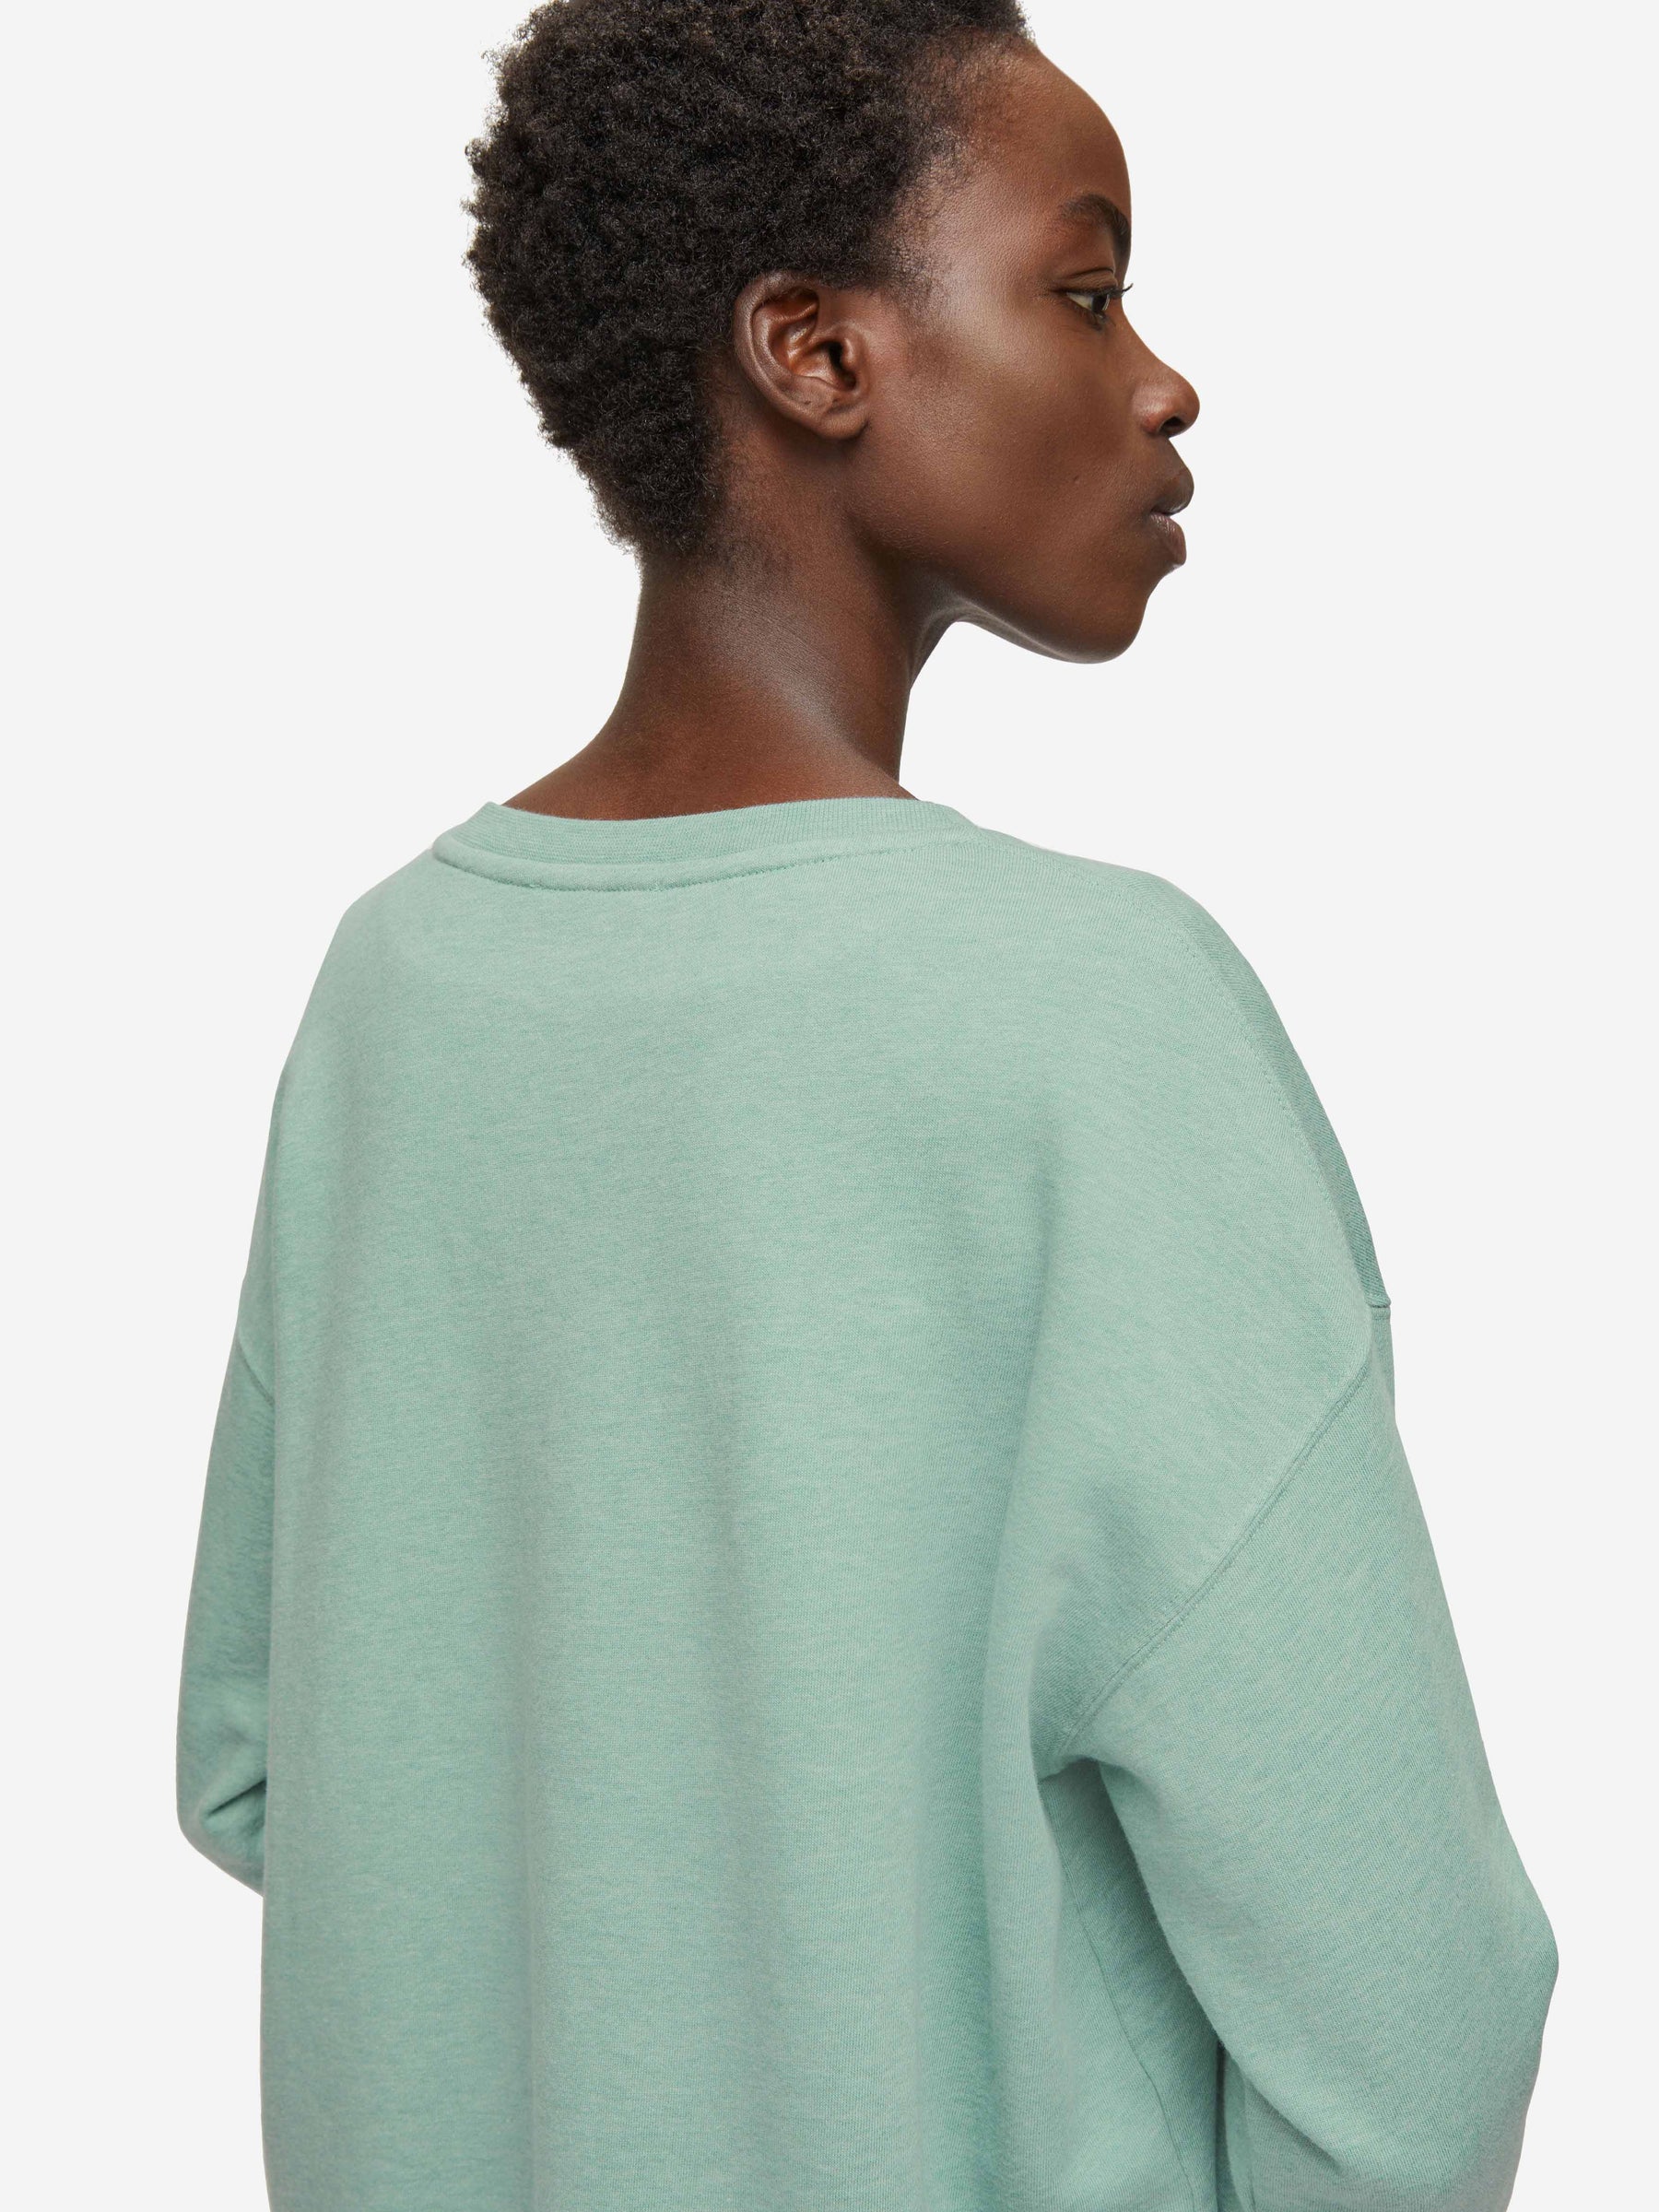 Women's Sweatshirt Quinn Cotton Modal Soft Green Heather